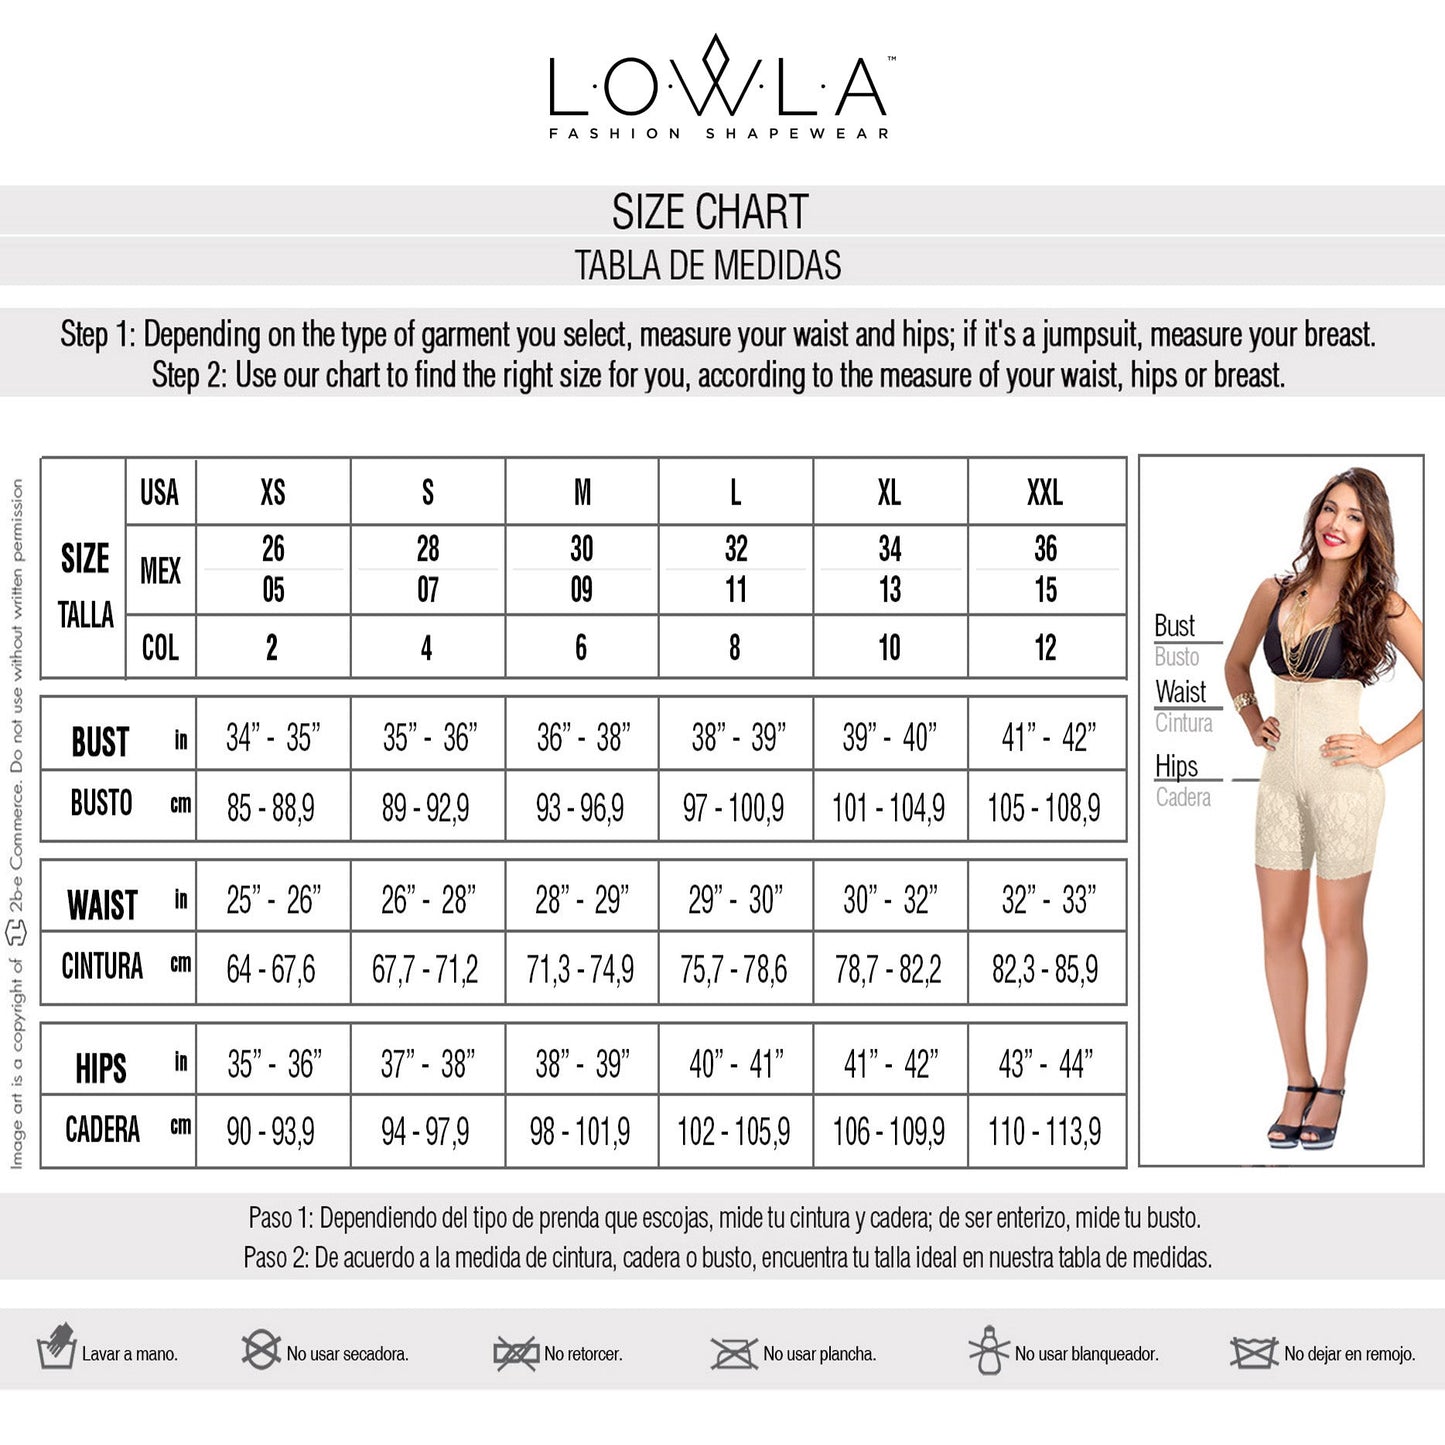 LOWLA 1202 |